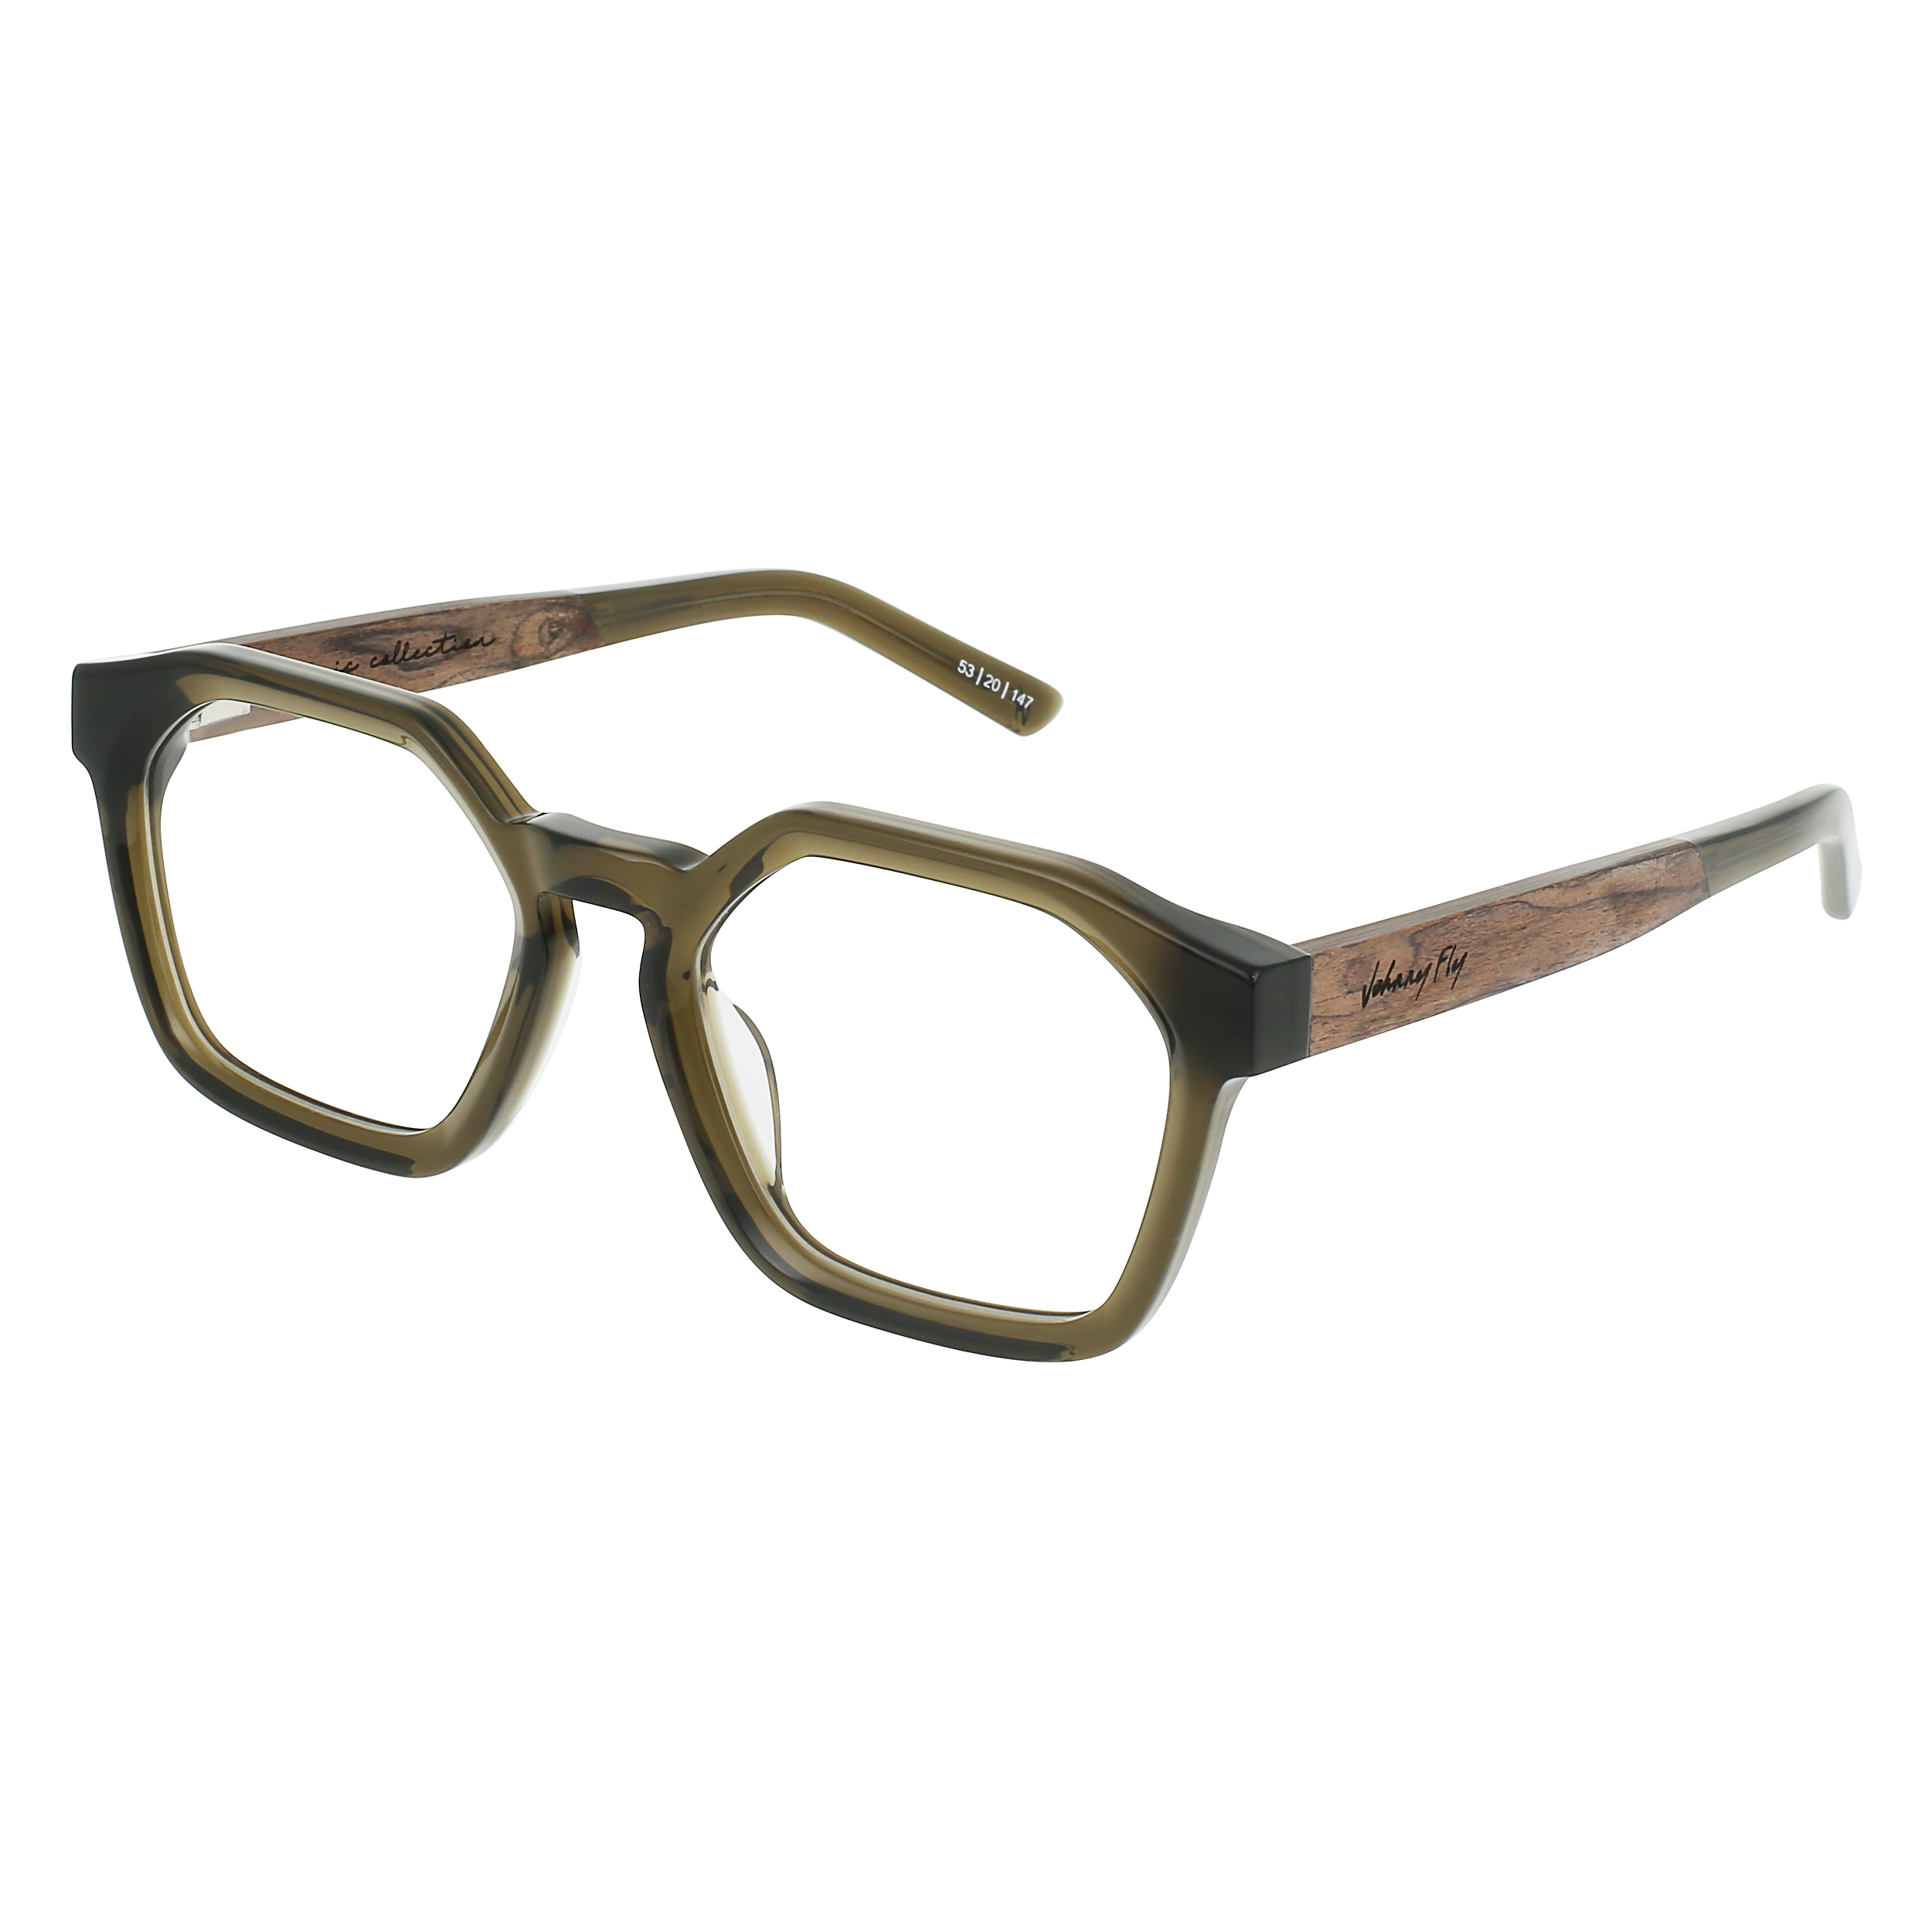 FORTUNE Eyeglasses Frame - Olive- Johnny Fly | FOR-OLV-FRAME | | #color_olive